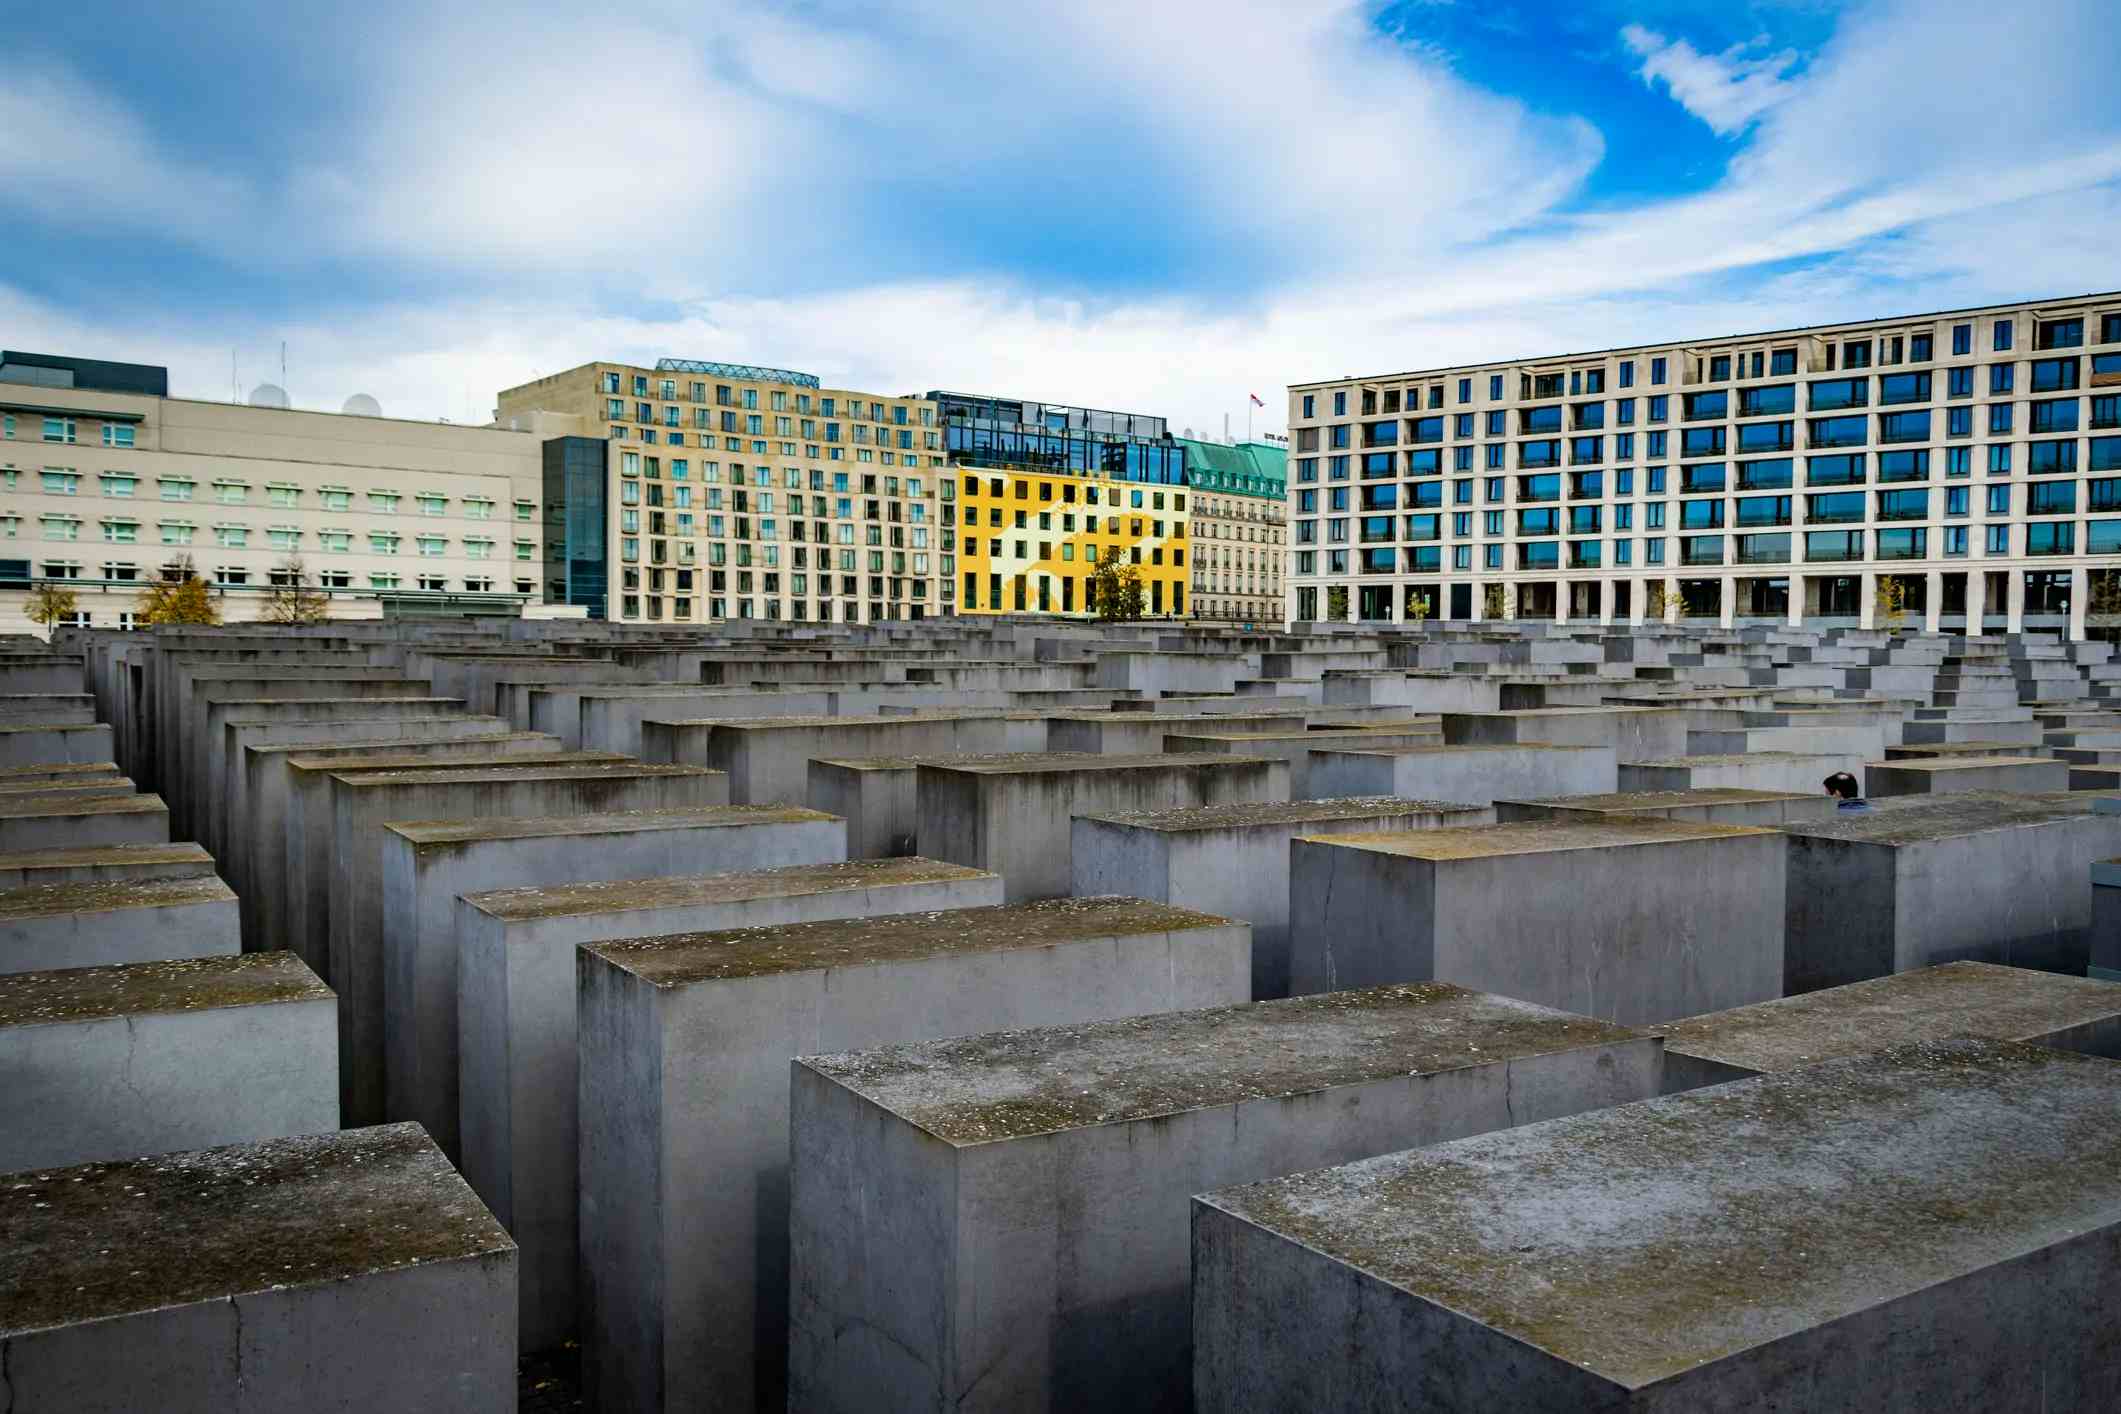 欧洲被害犹太人纪念碑 image